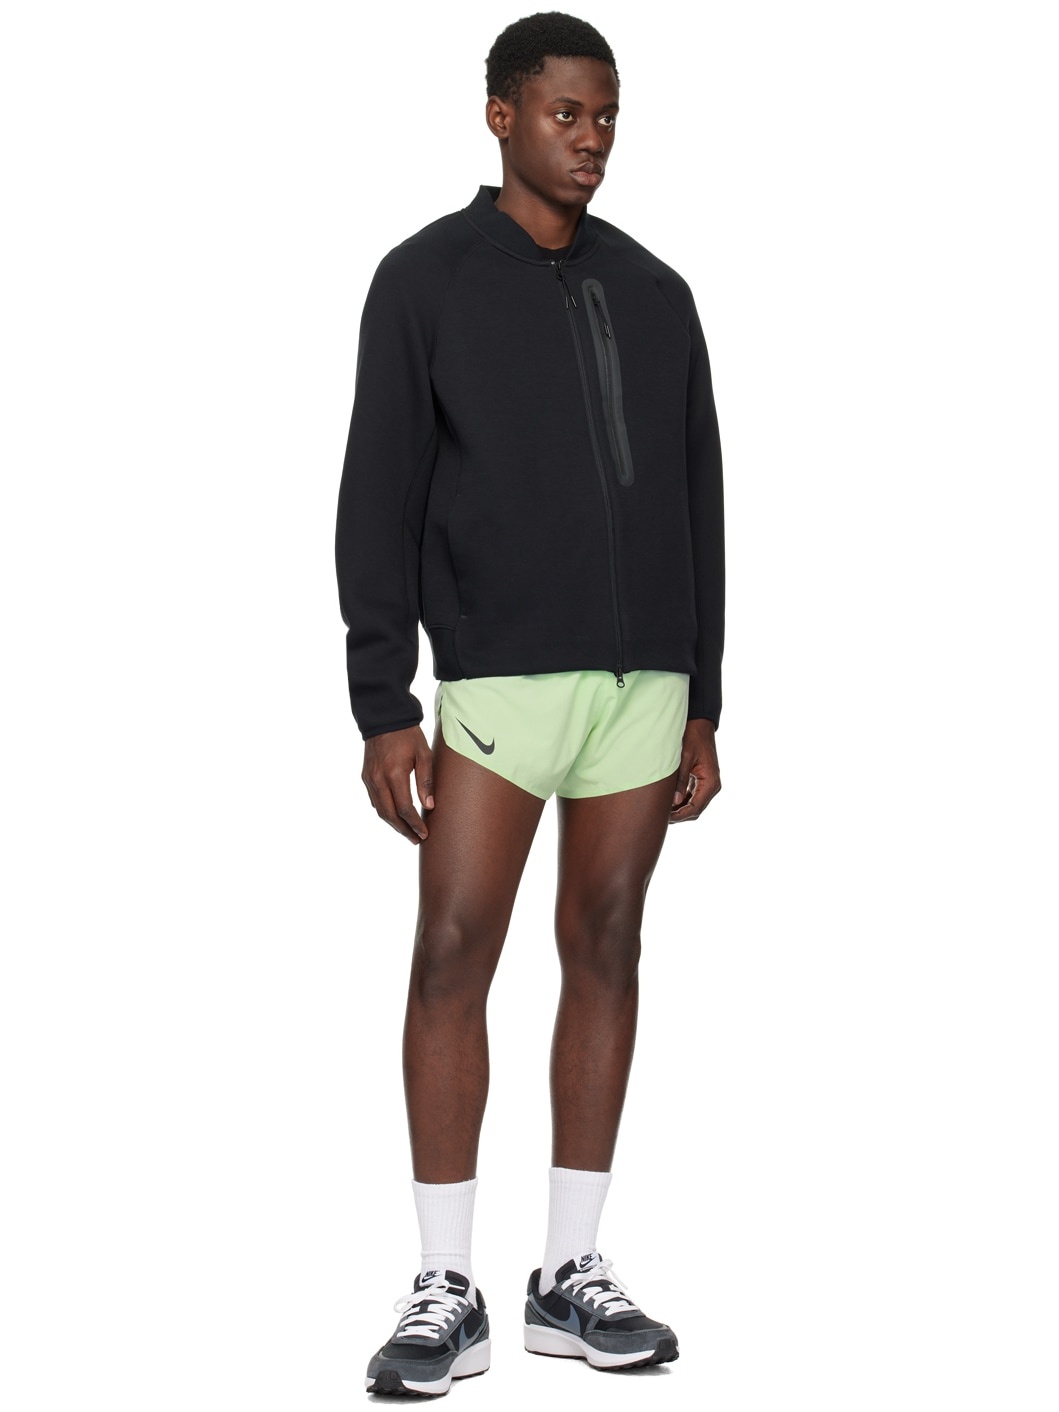 Green AeroSwift Shorts - 4